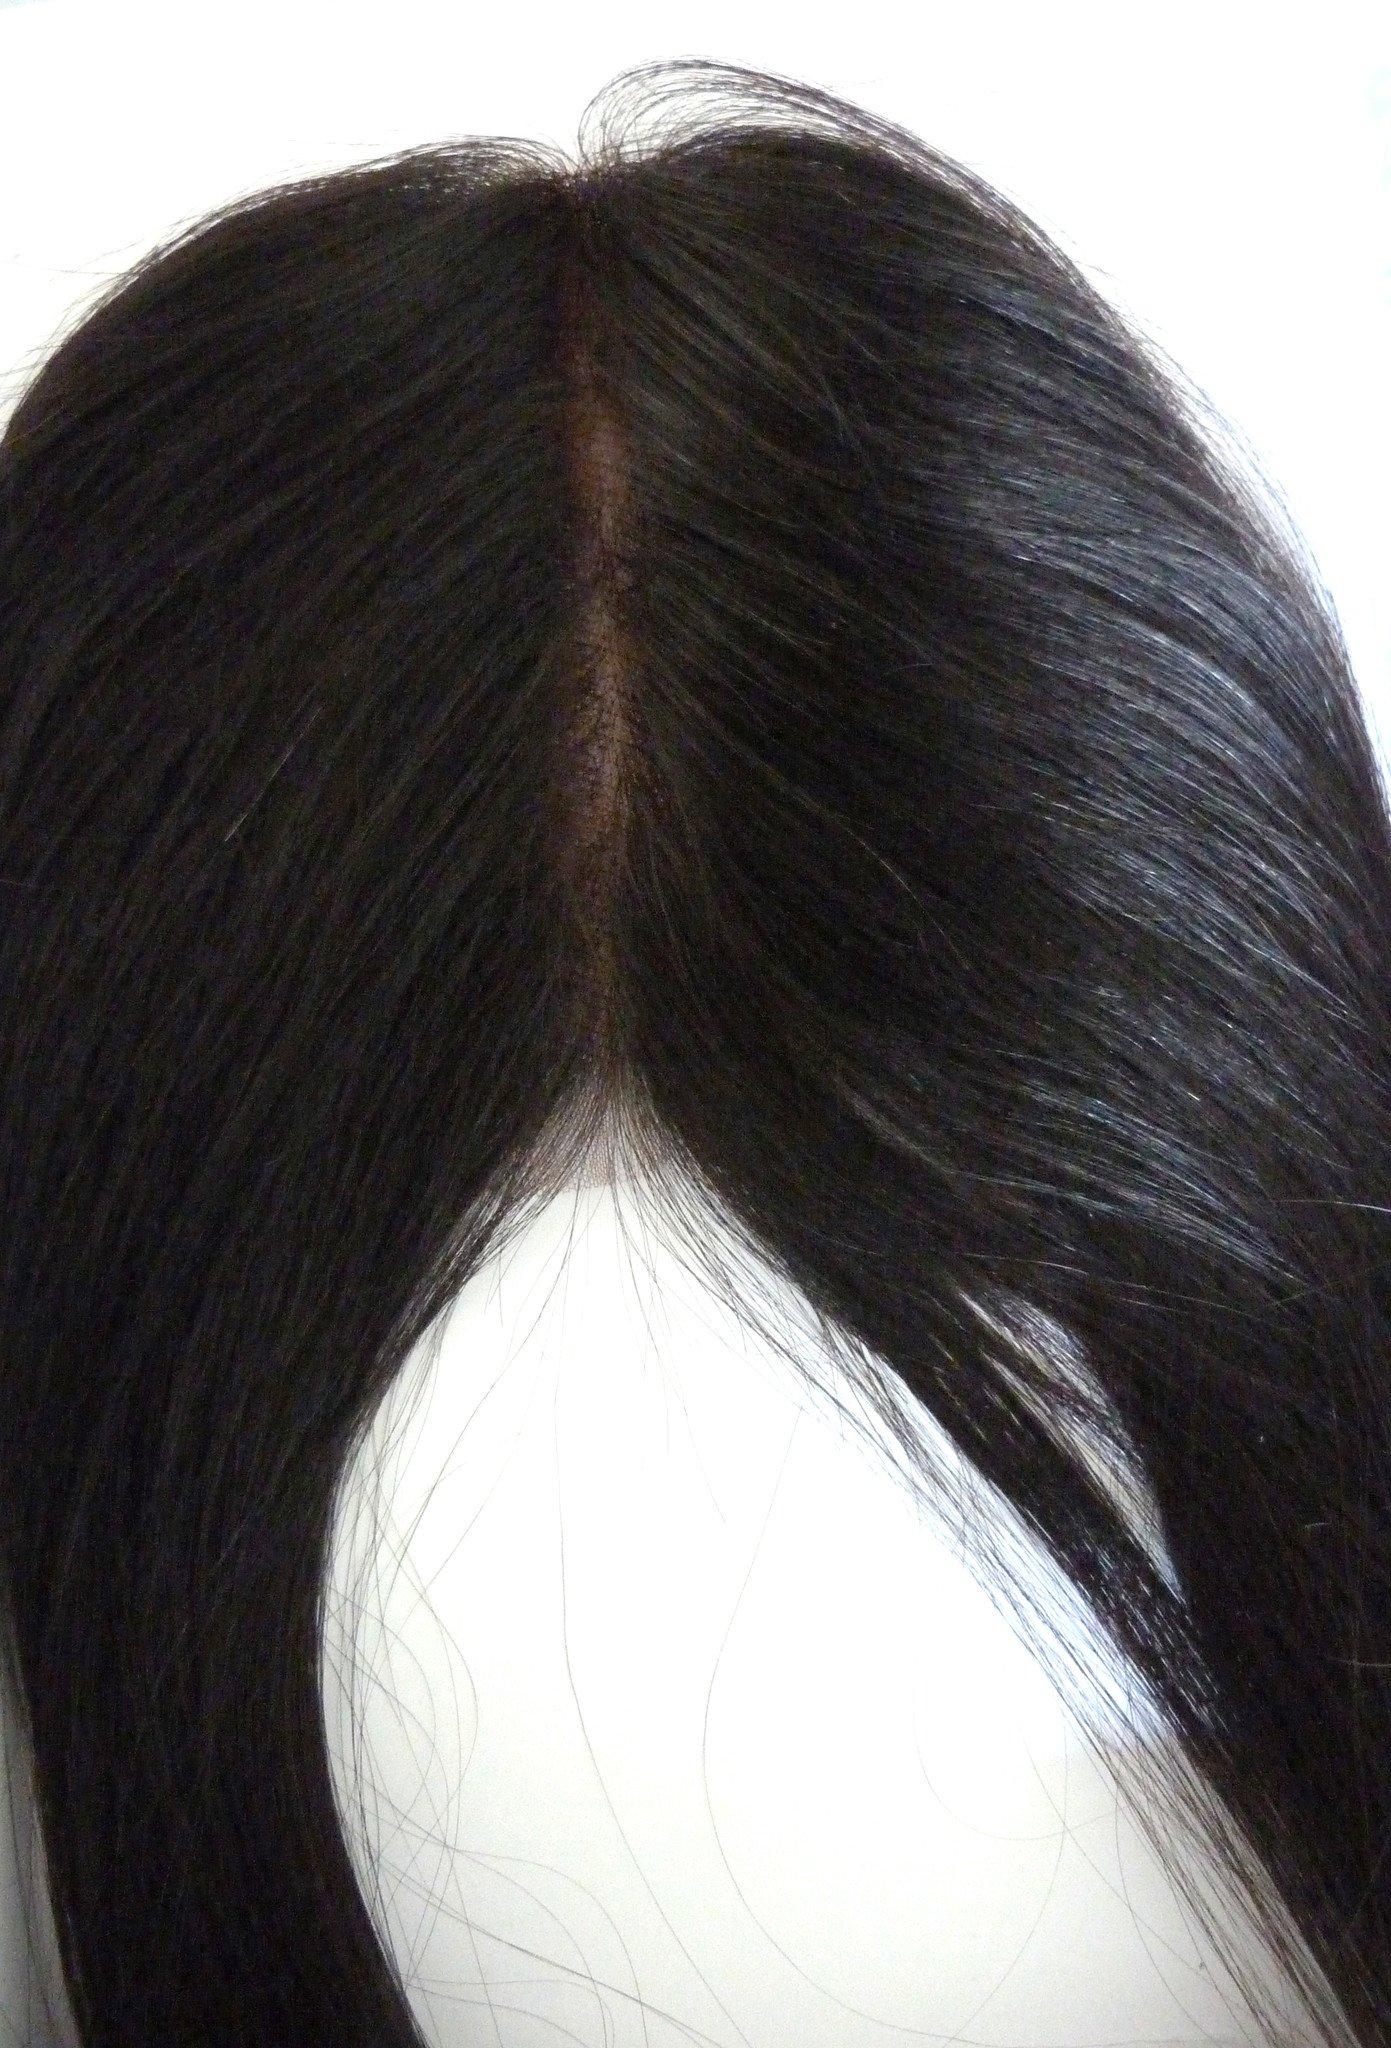 Fermeture supérieure en dentelle remy vierge indienne - 4x4" - cheveux vierges et beauté, les meilleures extensions de cheveux, de vrais cheveux humains vierges.